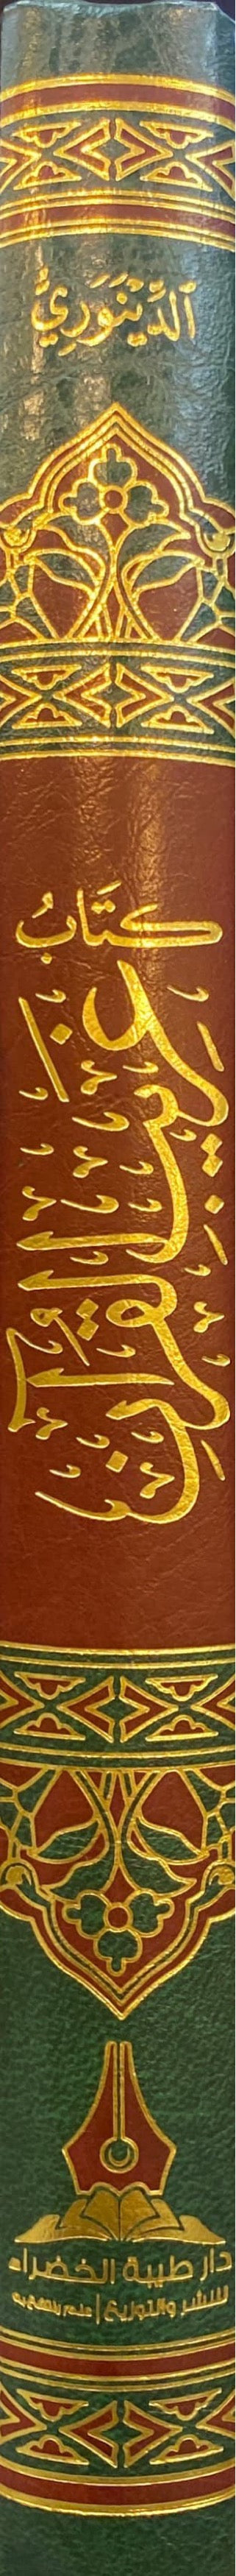 كتاب غريب القران للدينوري    Gharib Al Quran Ibn Qutaiba